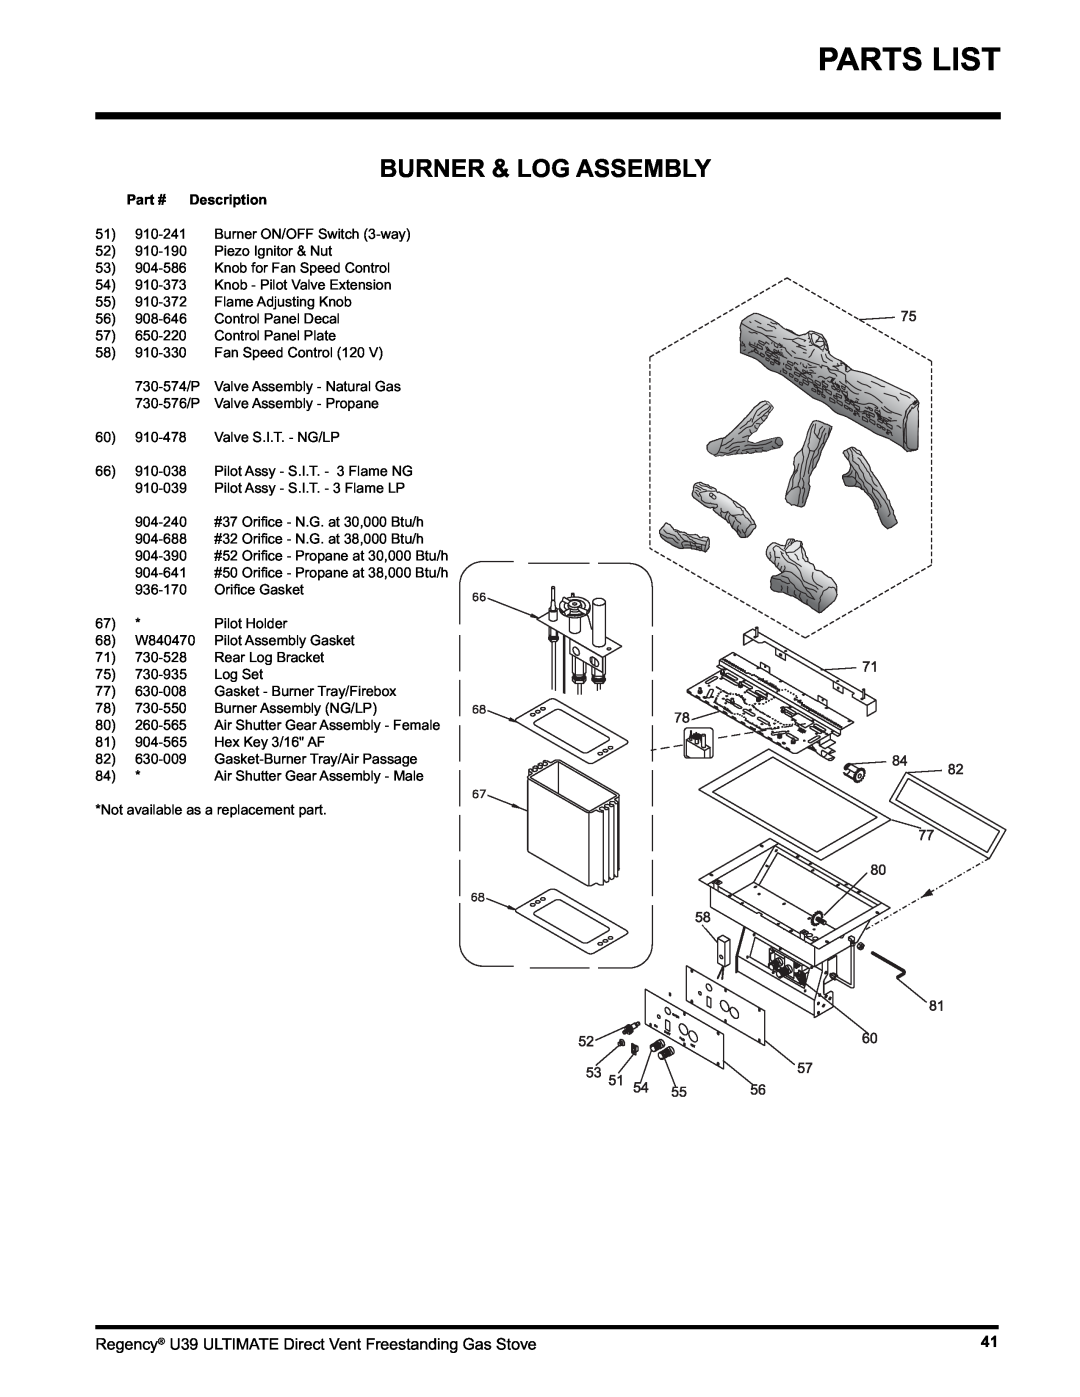 Regency U39-NG1, U39-LP1 installation manual Parts List, Burner & Log Assembly, Description 